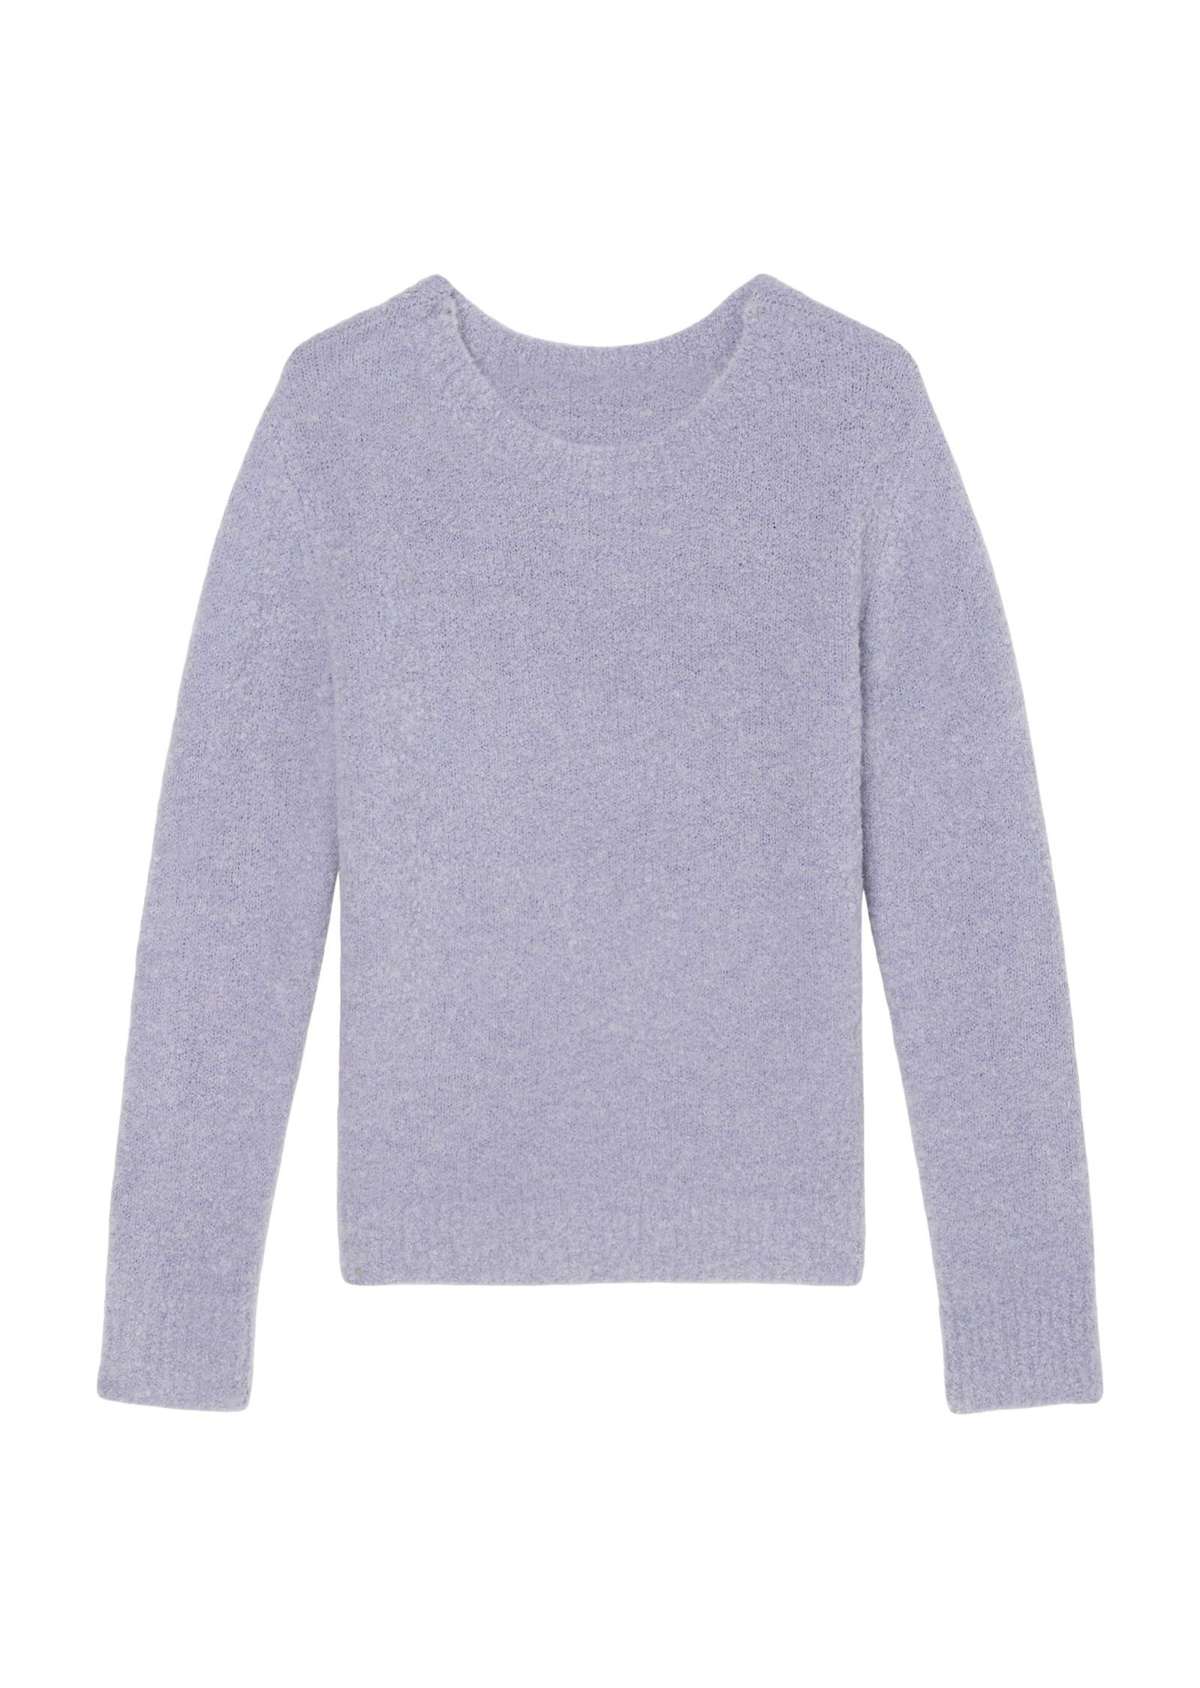 Вязаный свитер из смеси натуральной шерсти и шерсти альпаки.